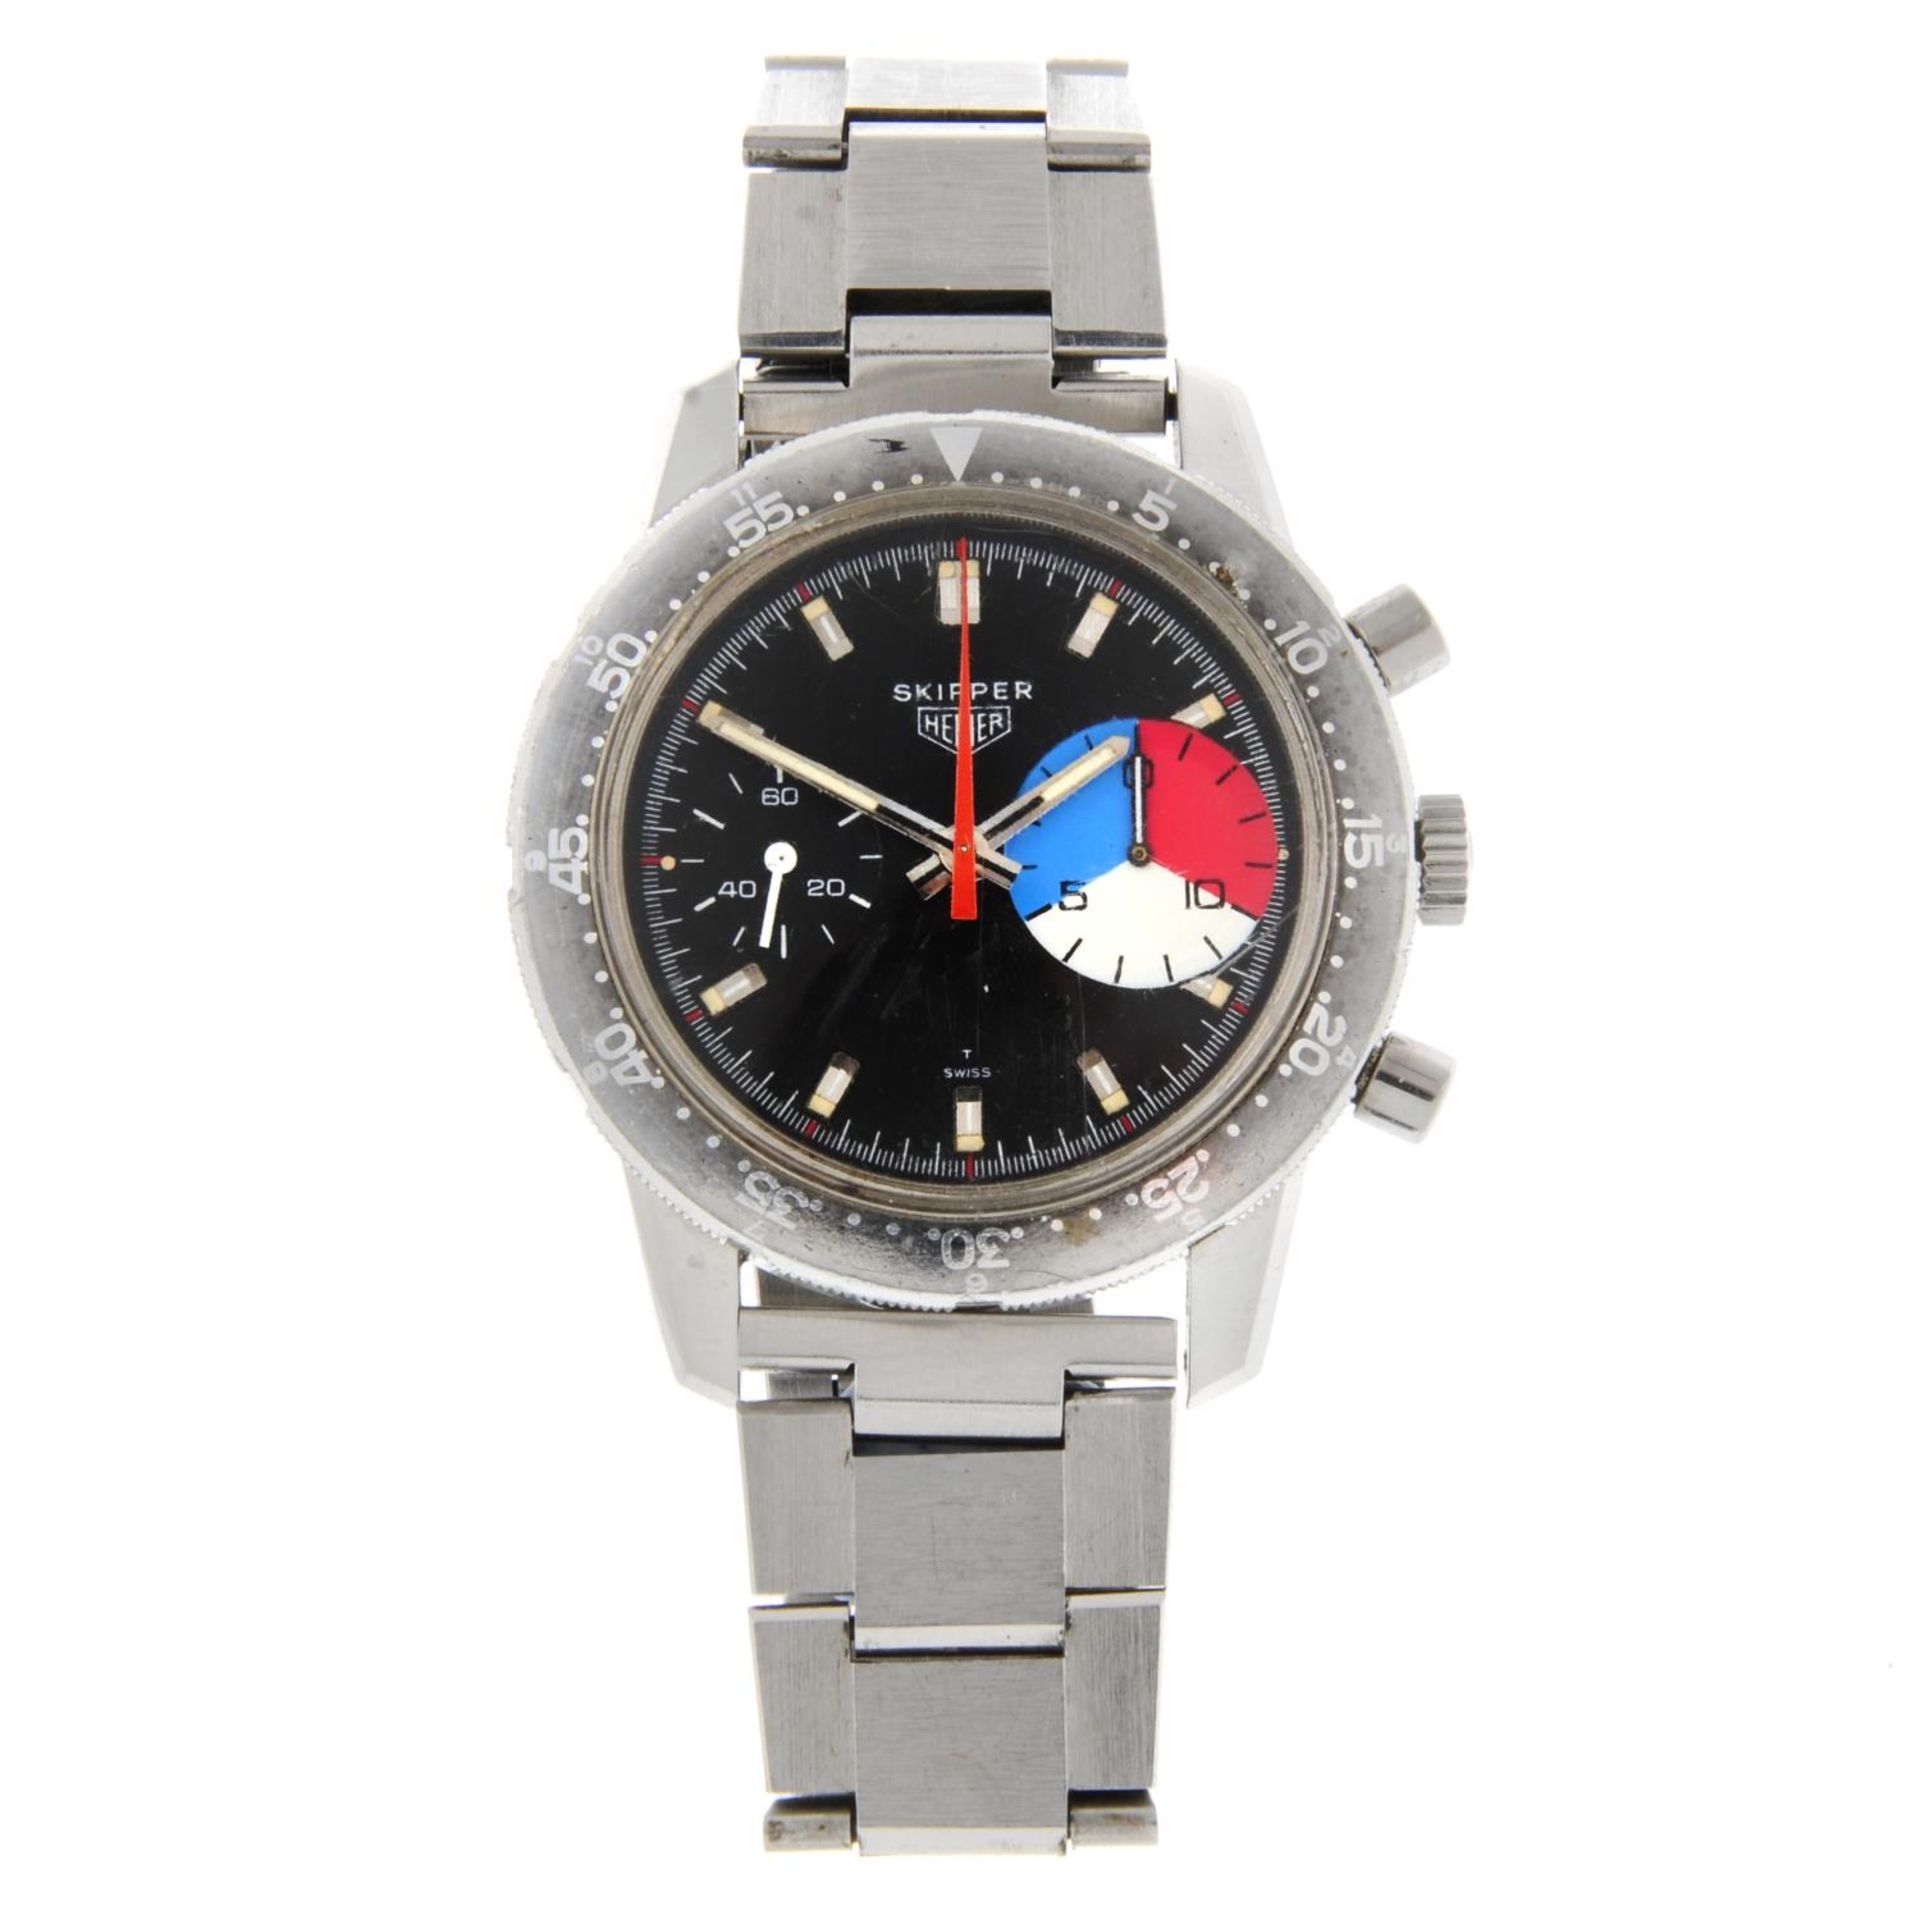 HEUER - a gentleman's 'Skipper' chronograph bracelet watch.